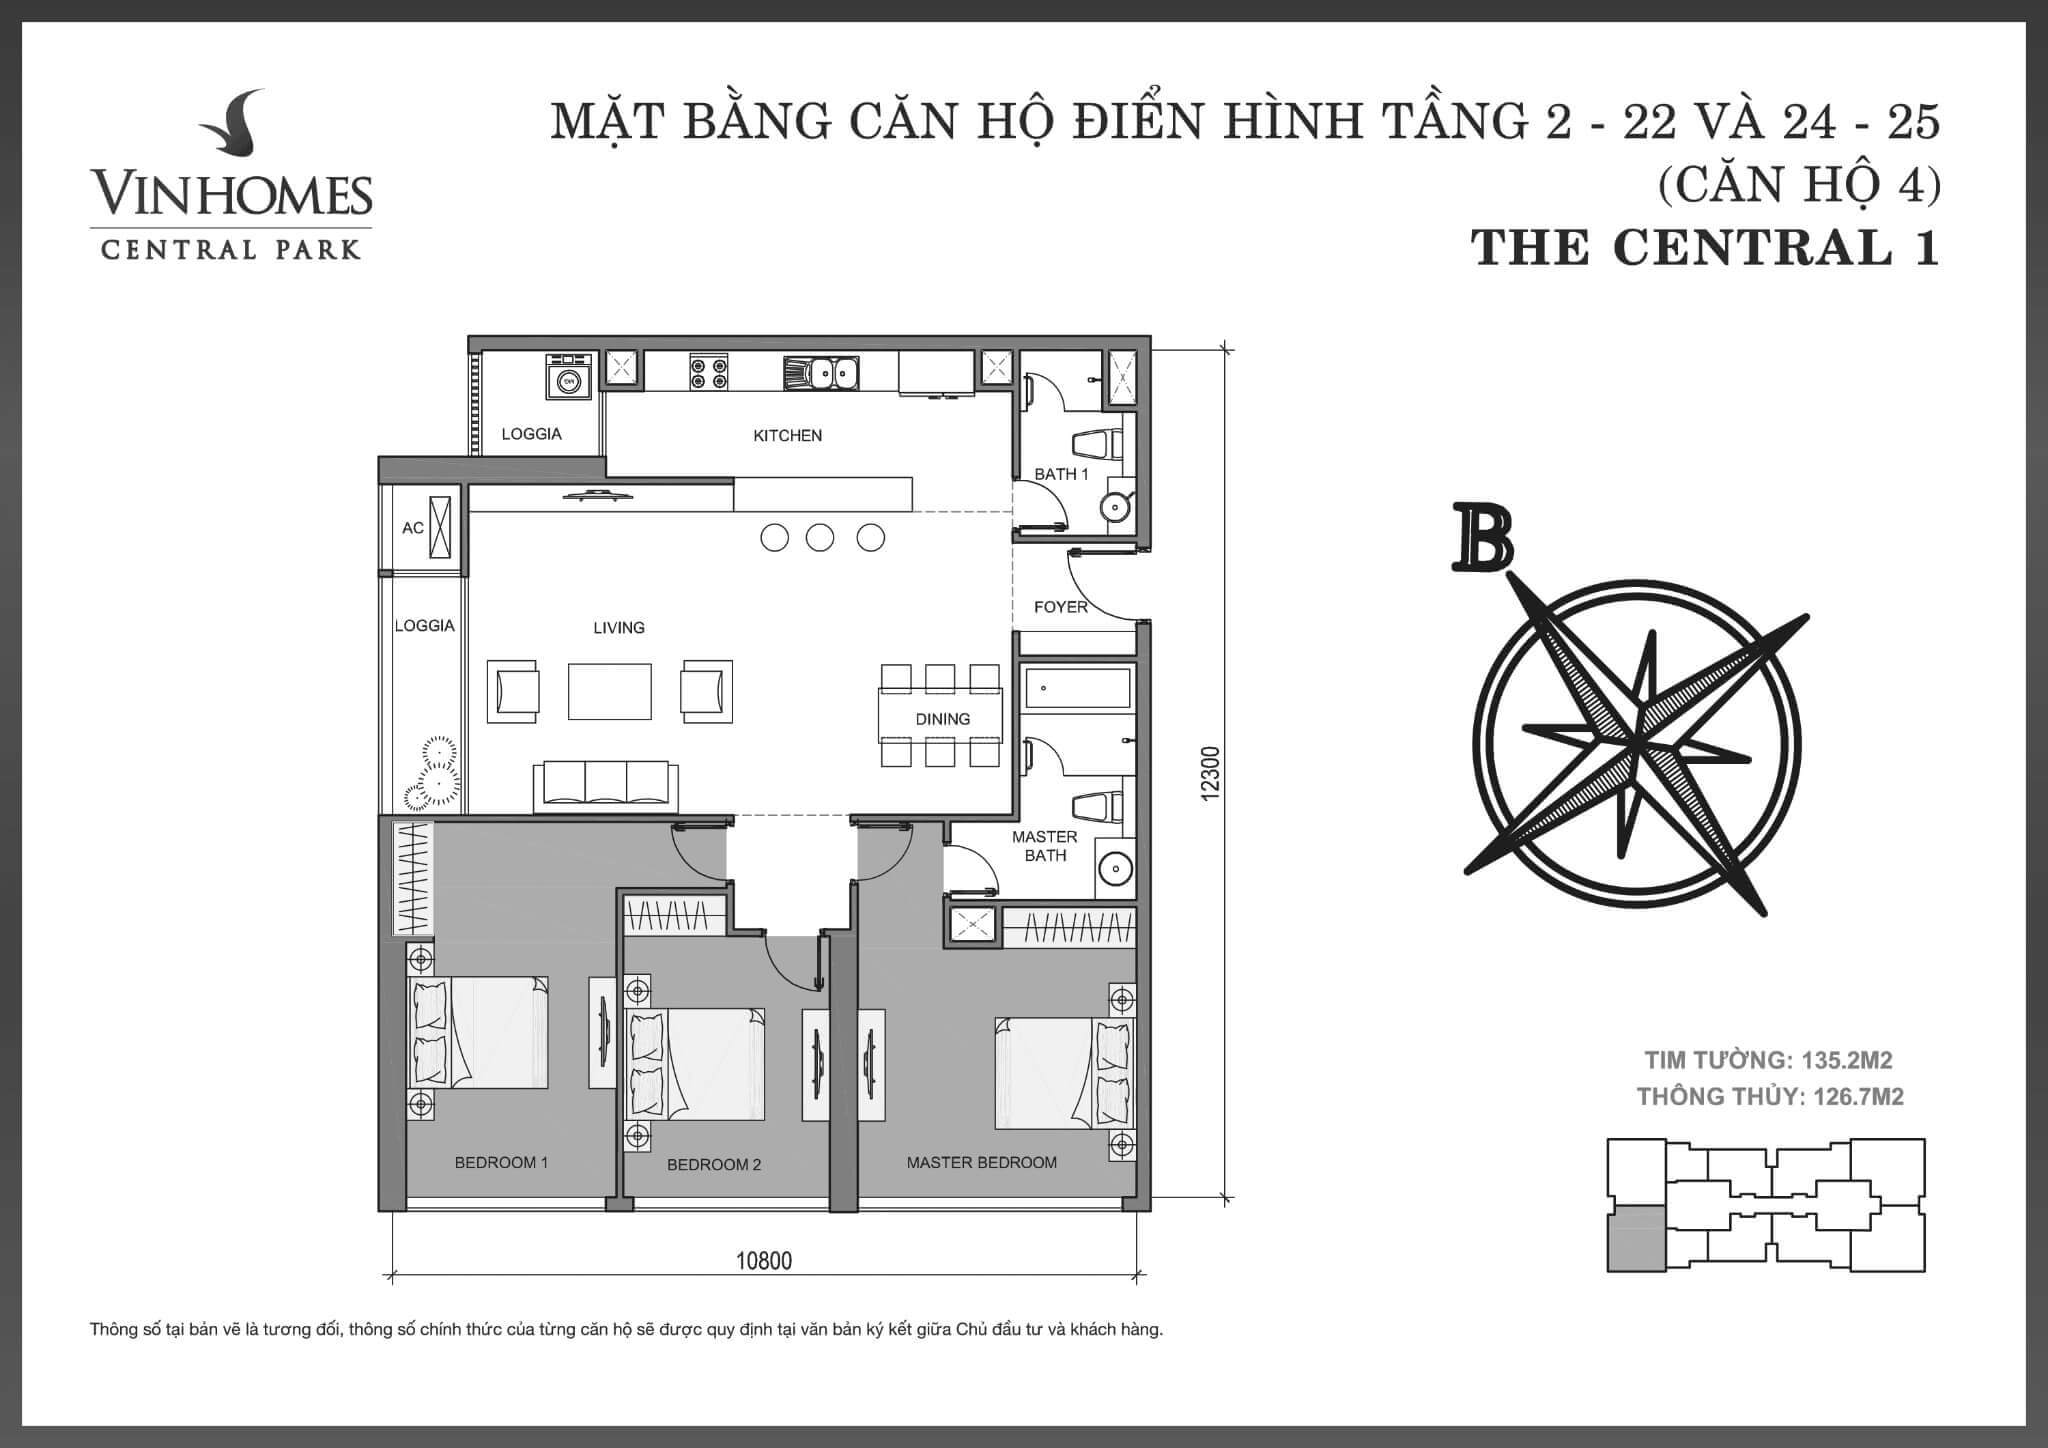 layout căn hộ số 4 tòa Central 1